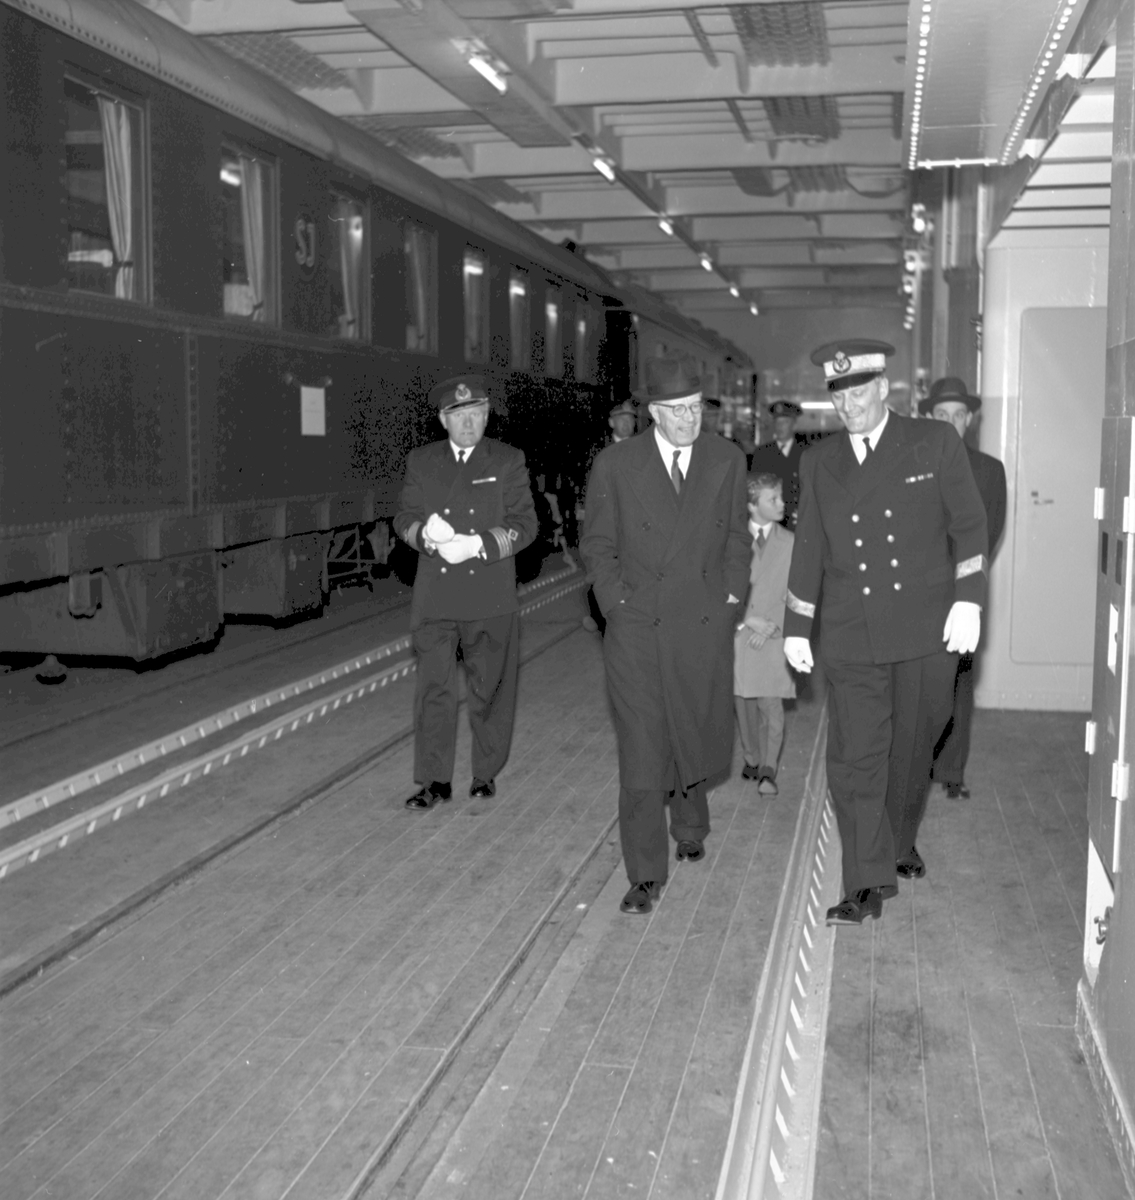 Kungabesöket på tågfärjan "Trelleborg" i Stockholm, Gustav VI Adolf och kronprins Carl Gustaf sedemera Carl XVI Gustaf. Generaldirektör Erik Upmark